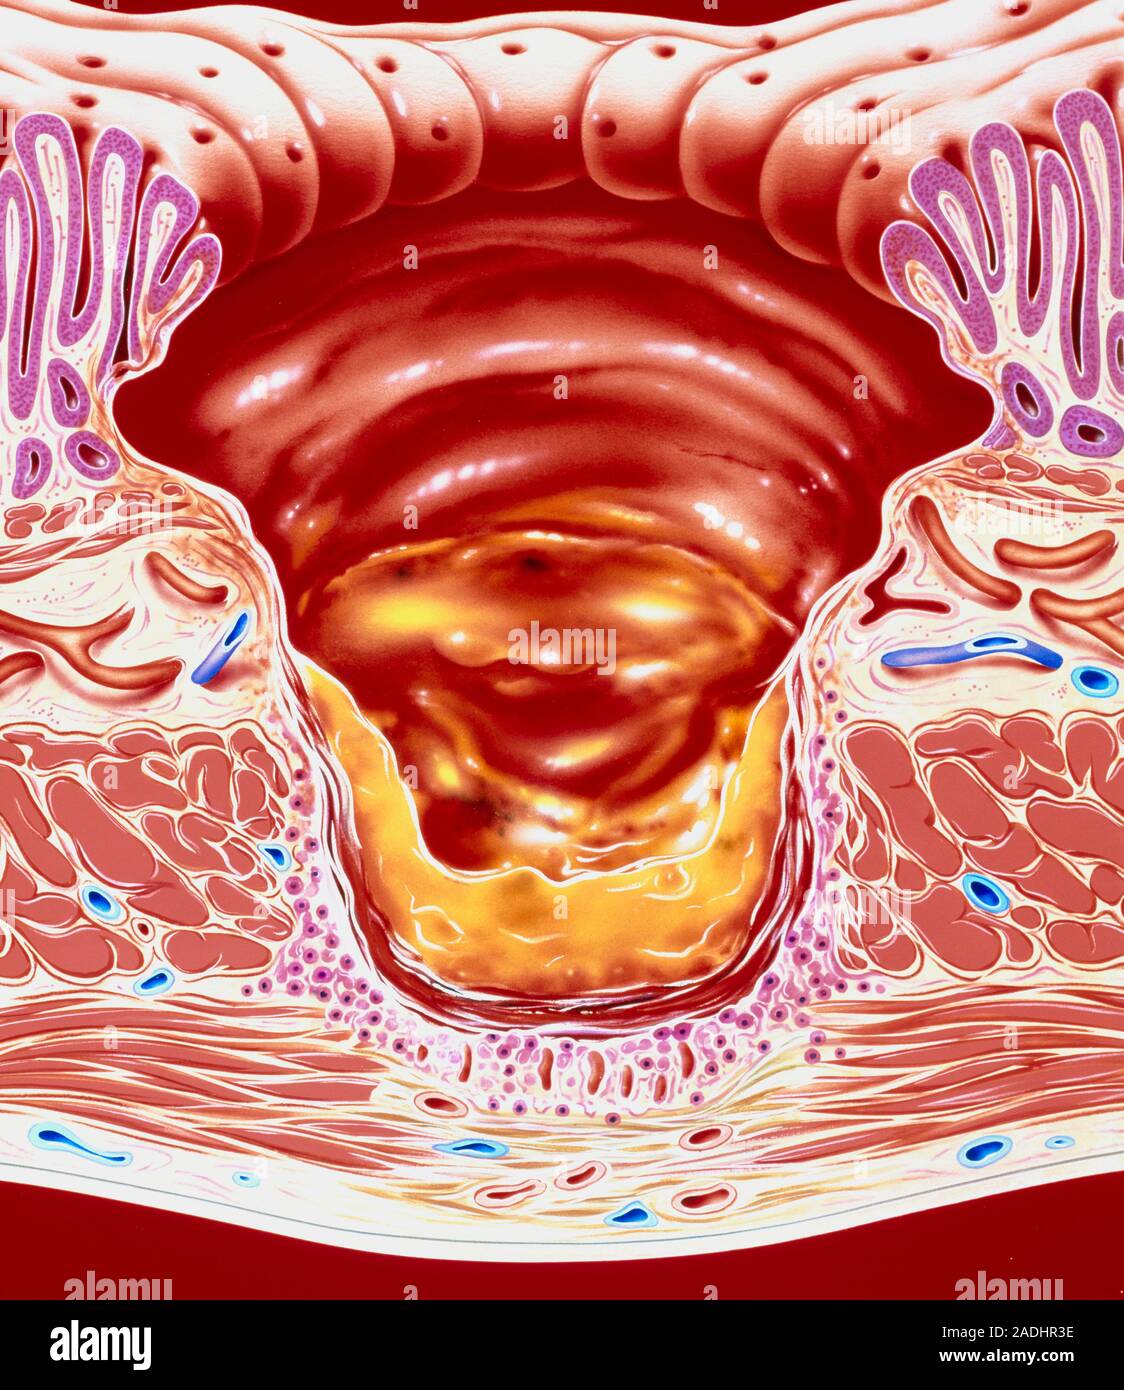 Слизистая оболочка 12 кишки. Язва 12 перстной кишки эндоскопия. Атлас эндоскопии язва желудка. Эрозия слизистой оболочки кишечника. Гигантская язва желудка.